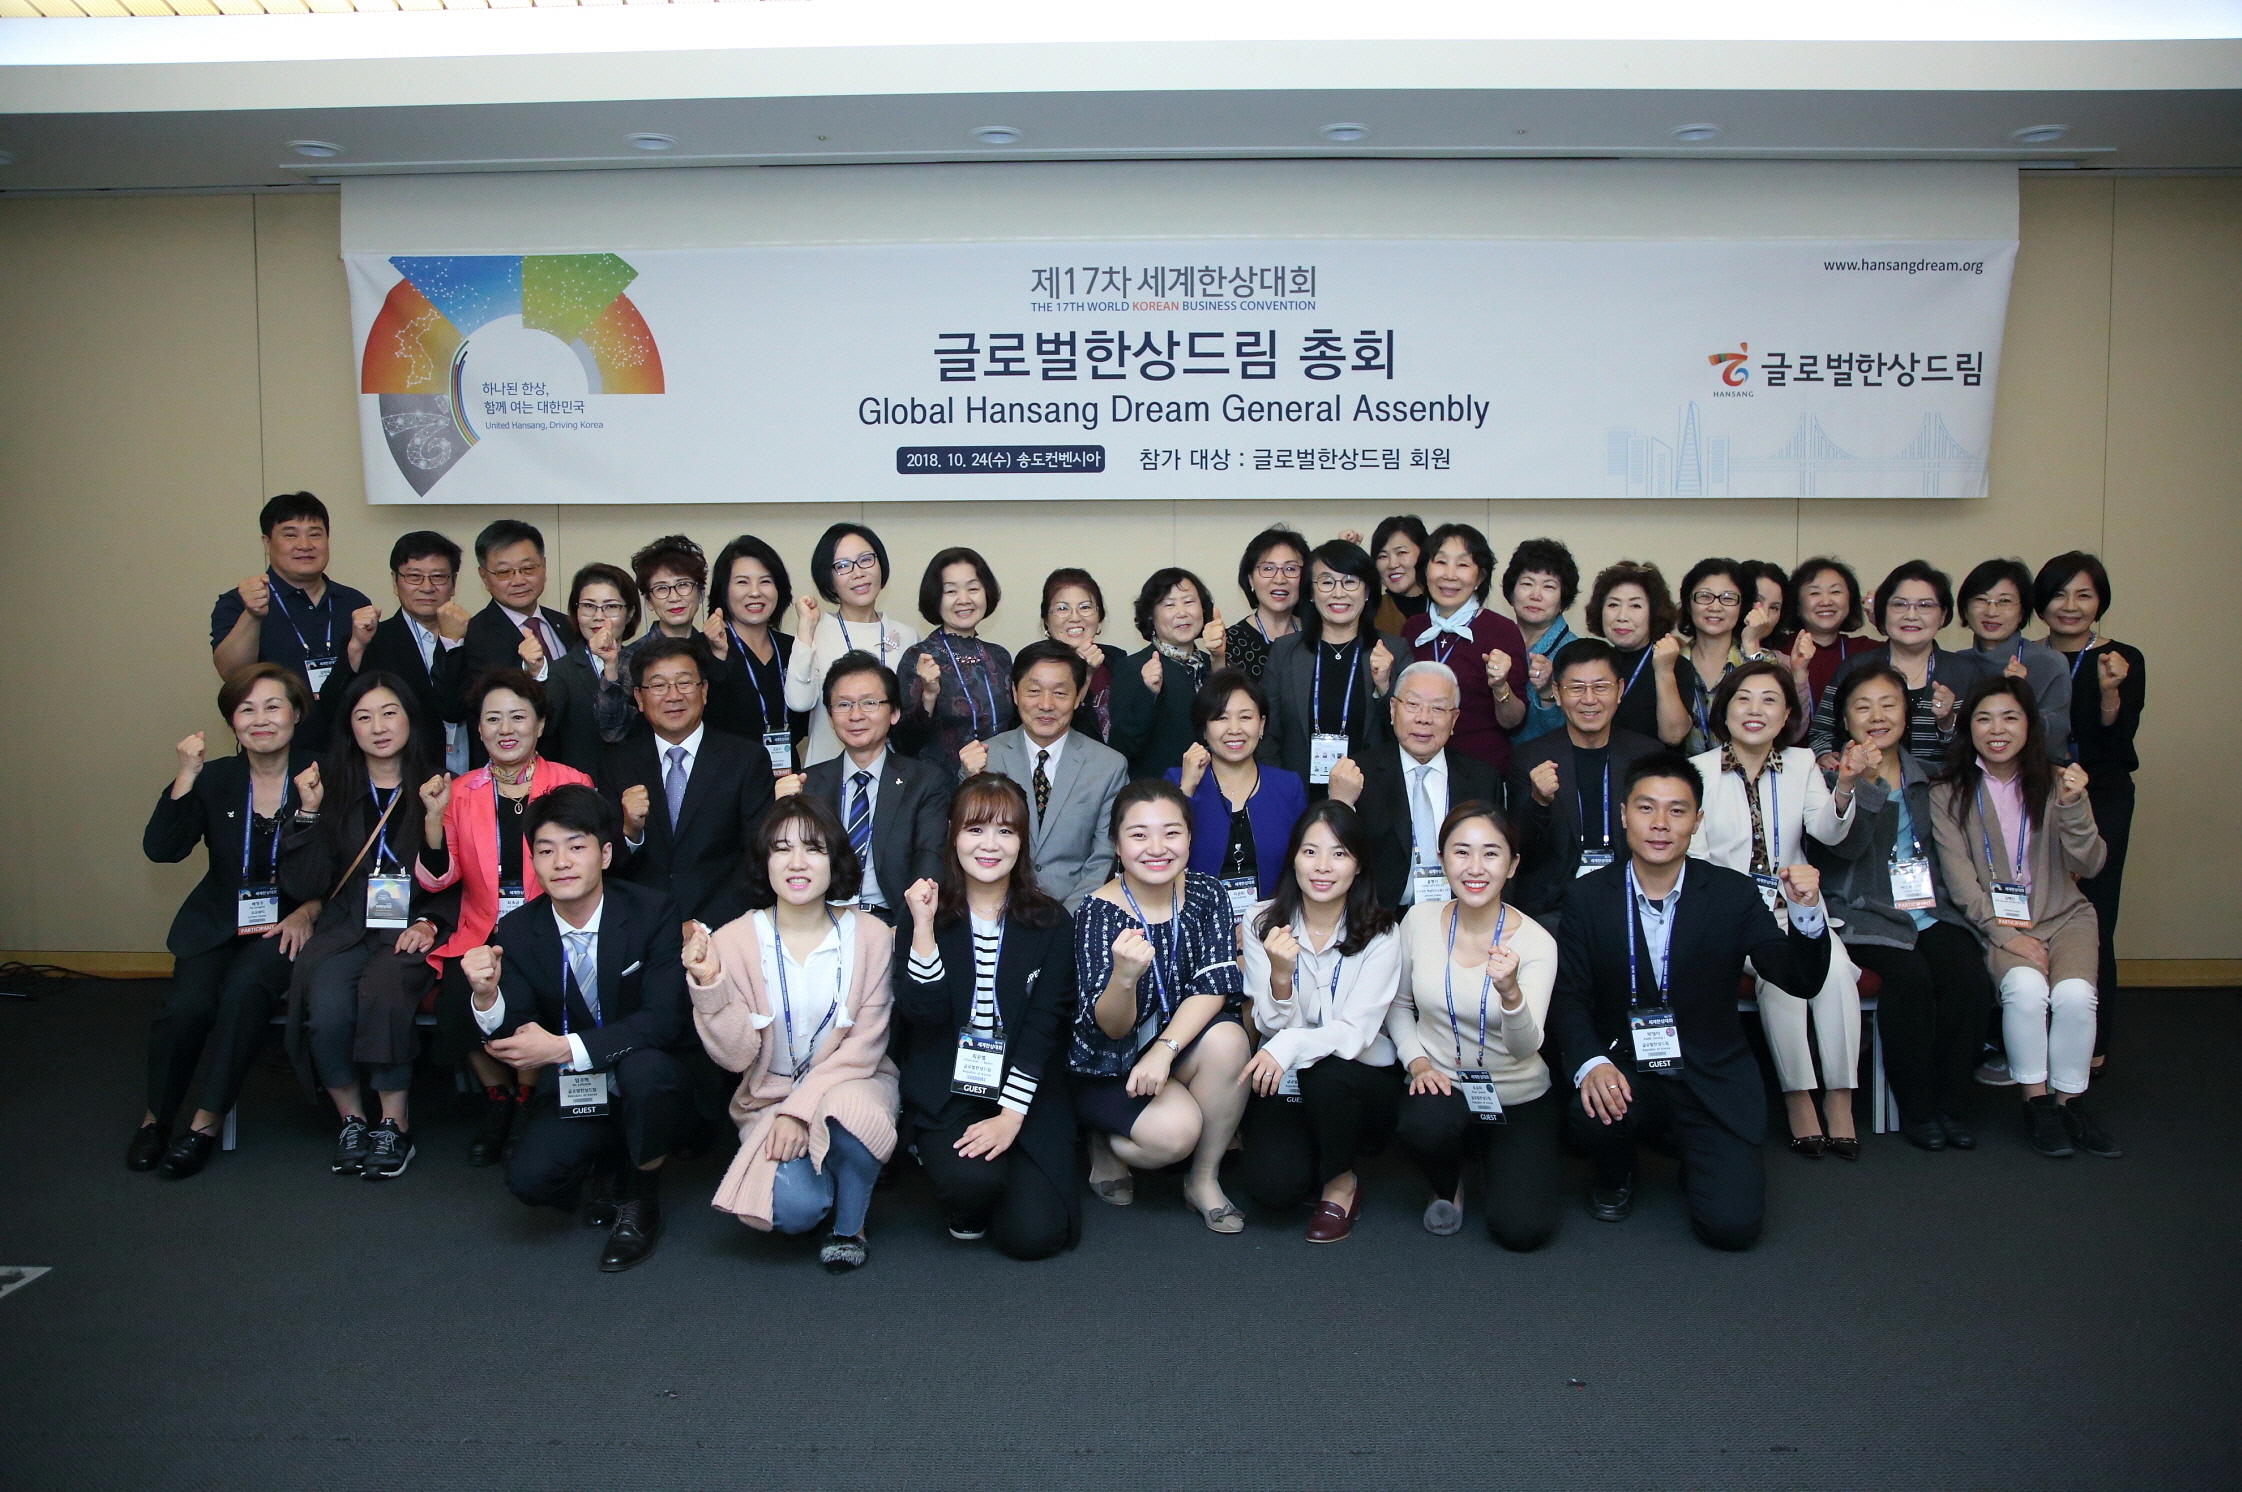 제17차서계한상대회 글로벌한상드림 총회 단체사진